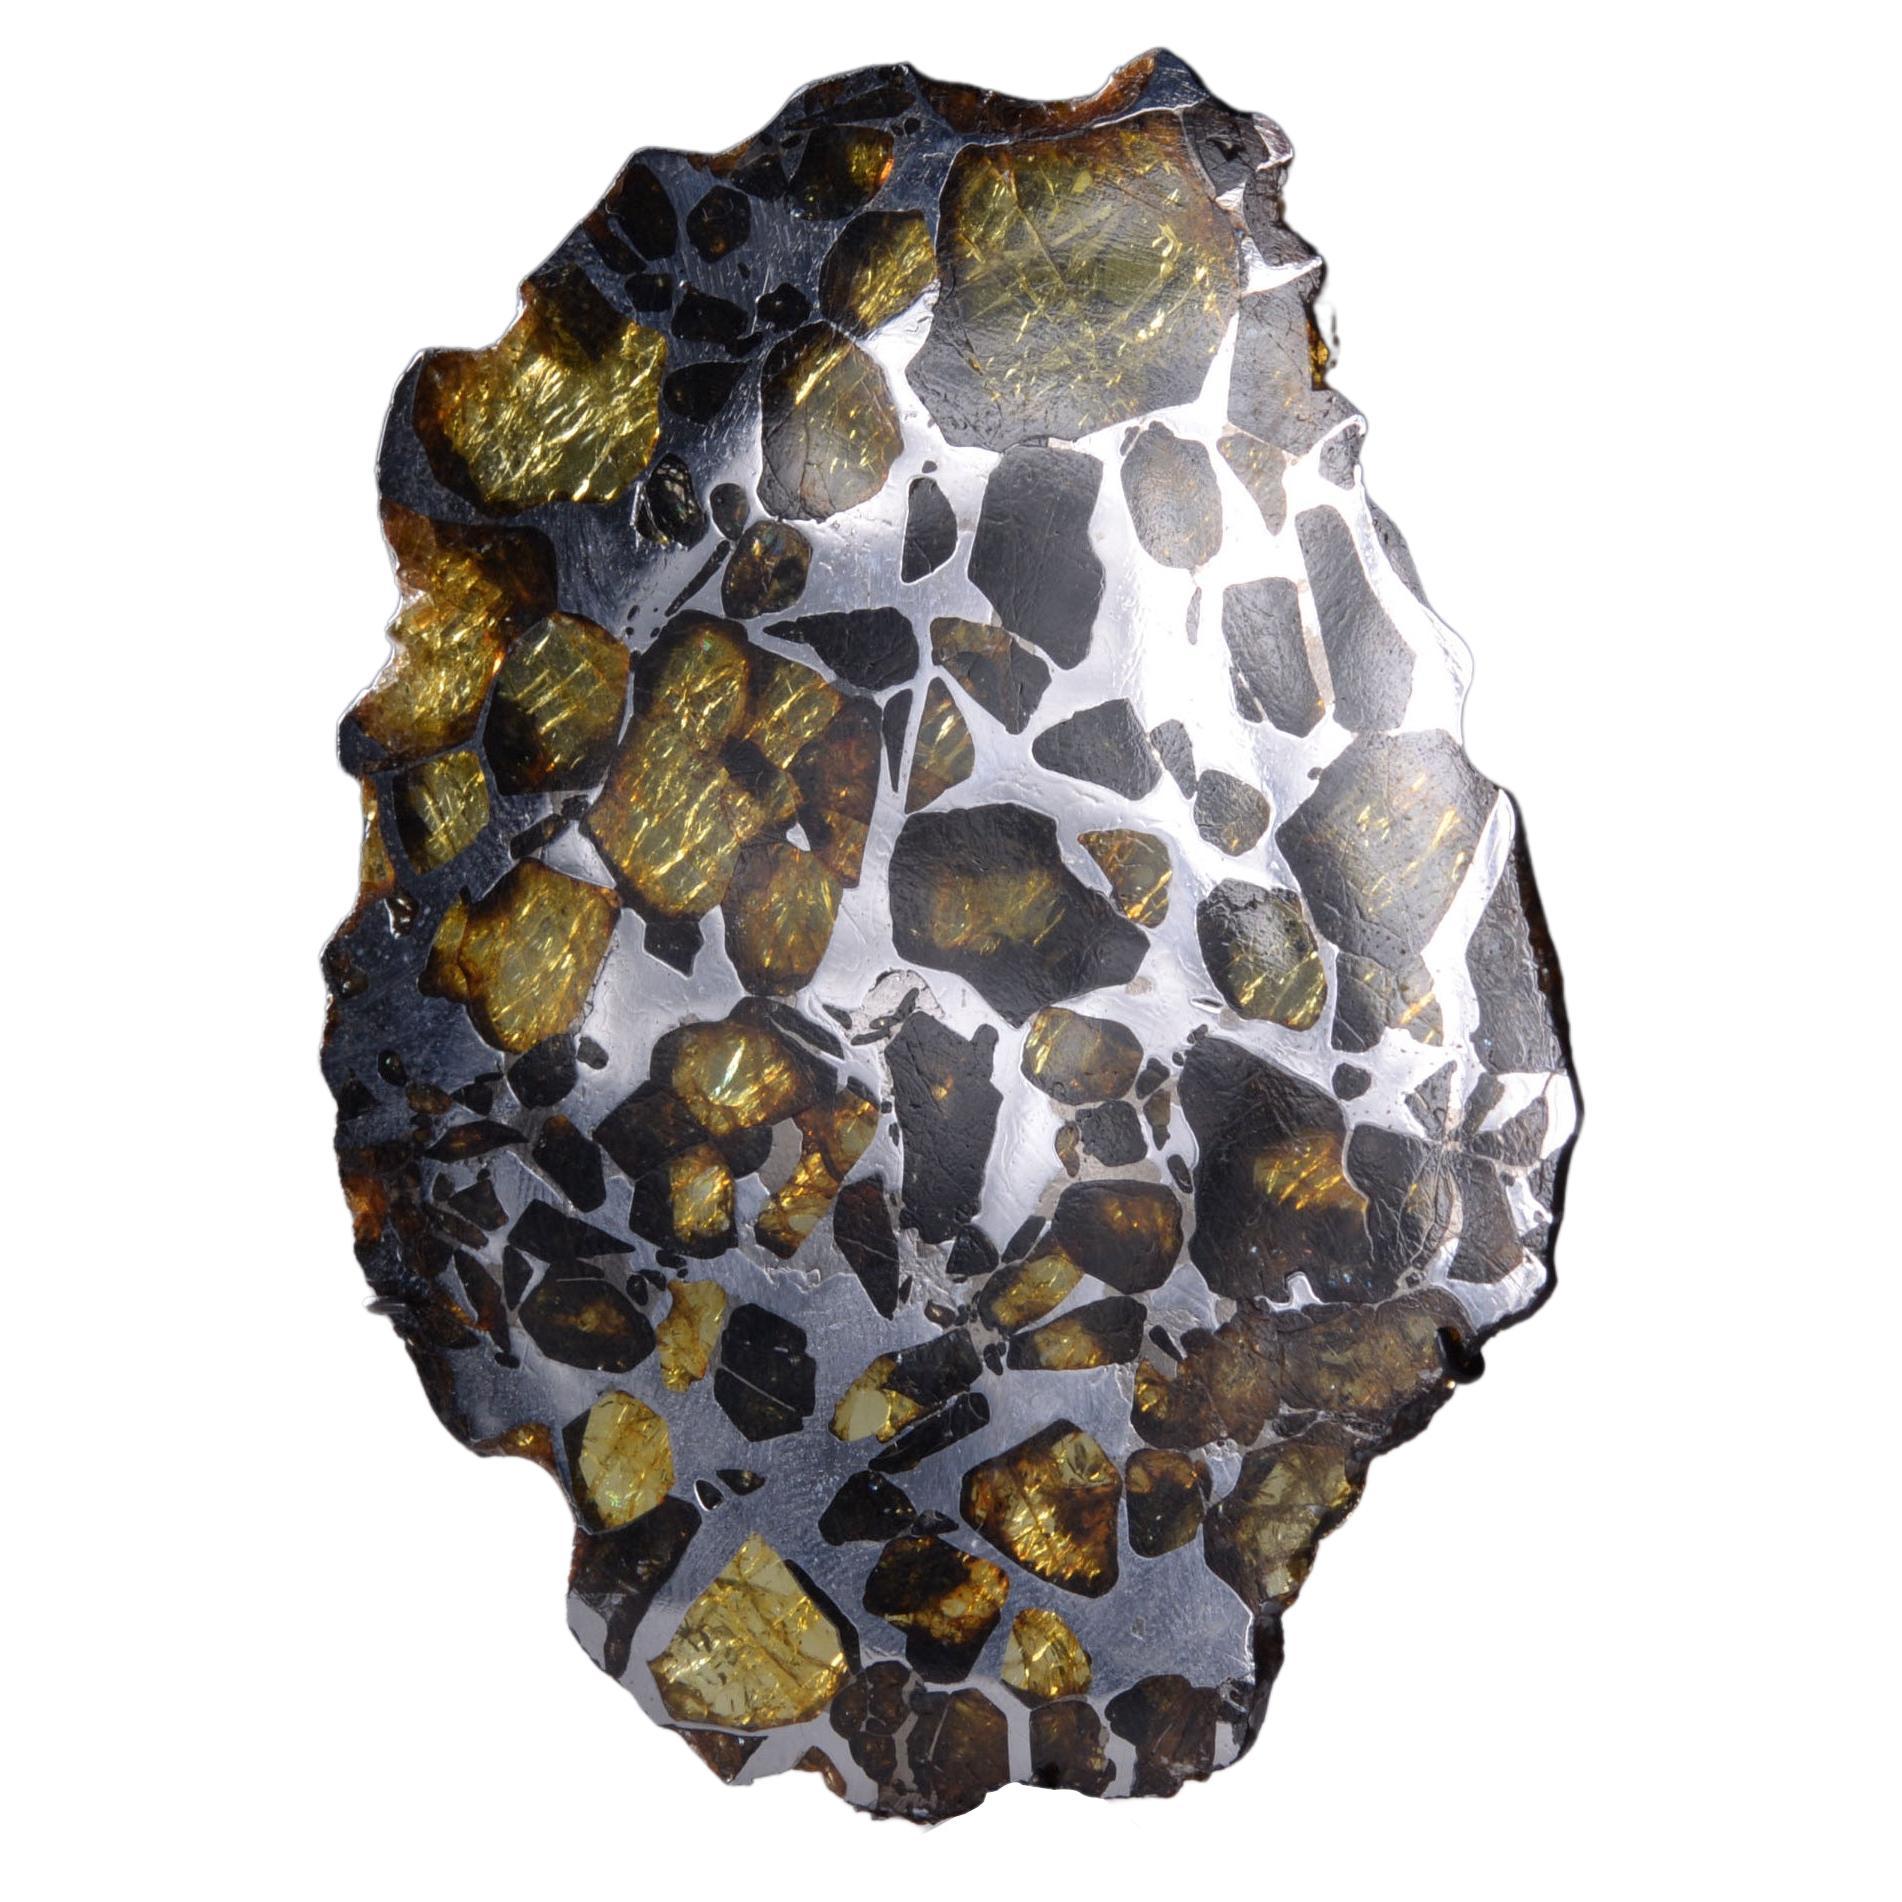 Vollständige Scheibe des Imilac-Meteoriten